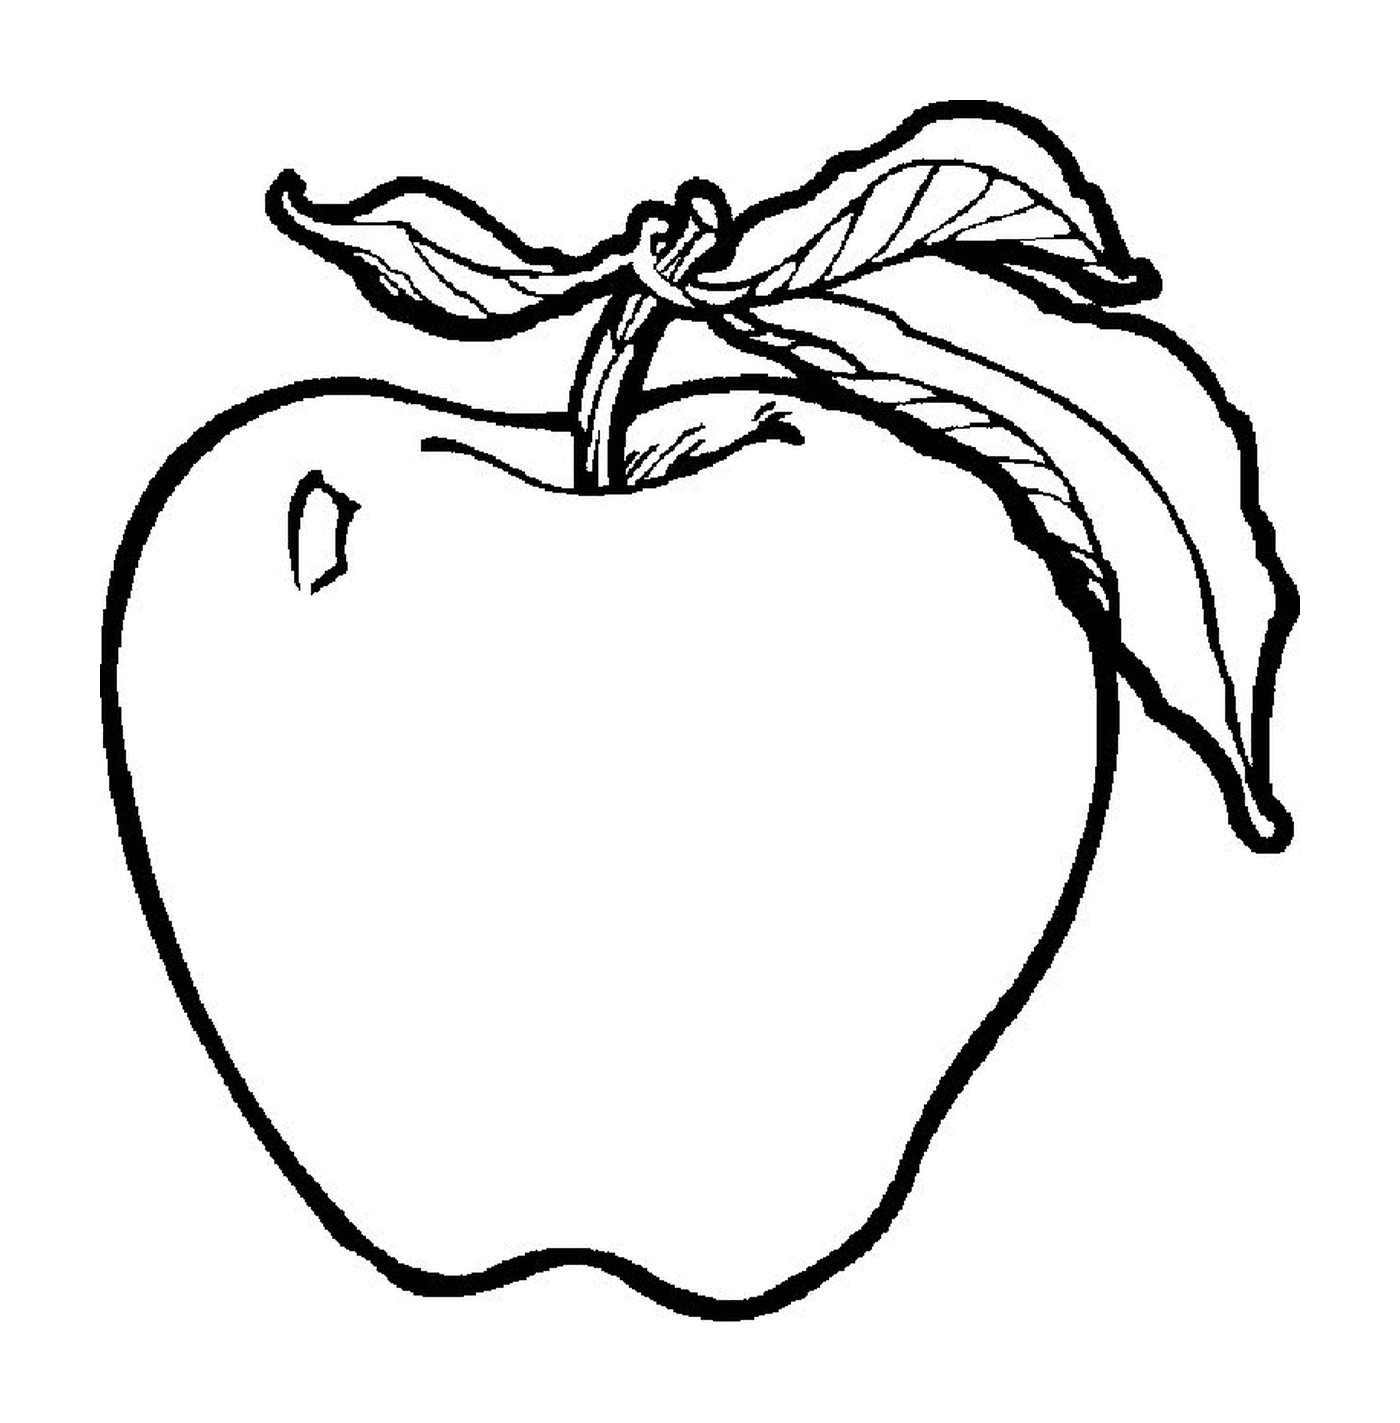  maçã crocante com uma folha 